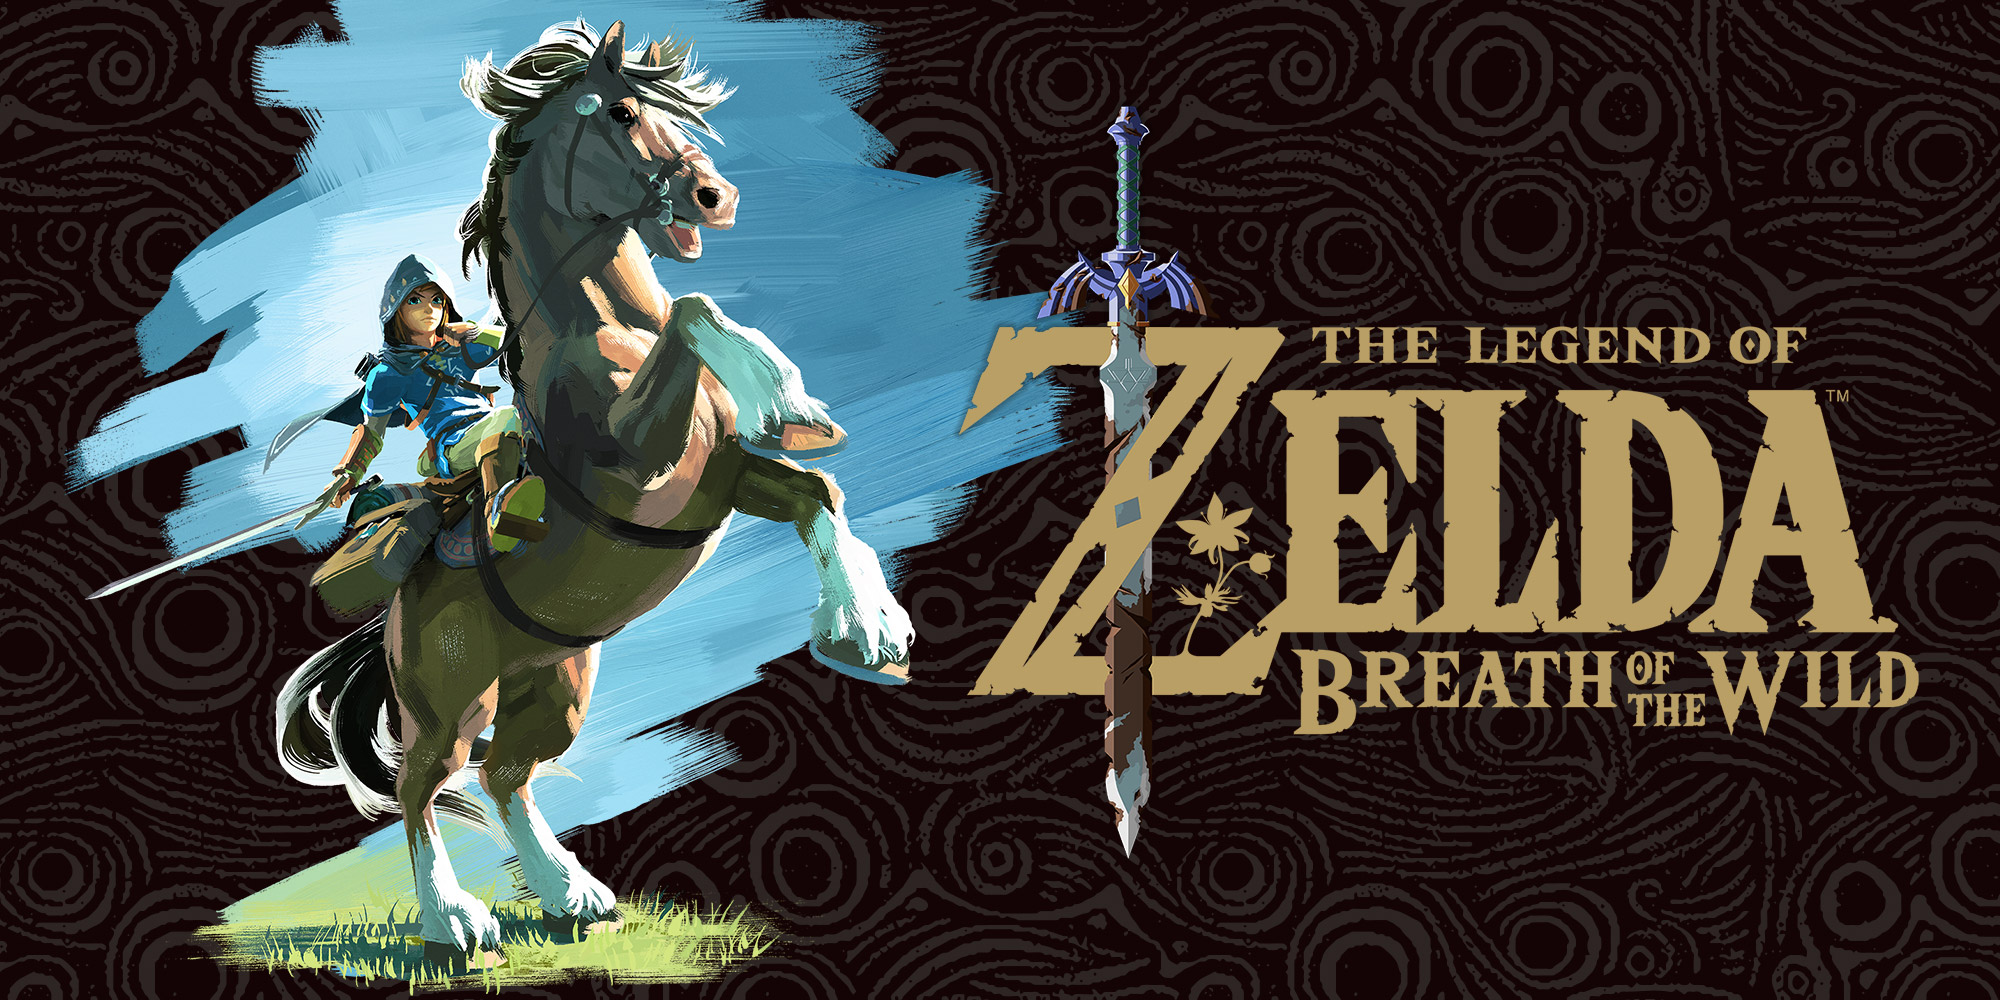 Scopri come usare gli amiibo di The Legend of Zelda in The Legend of Zelda: Breath of the Wild!